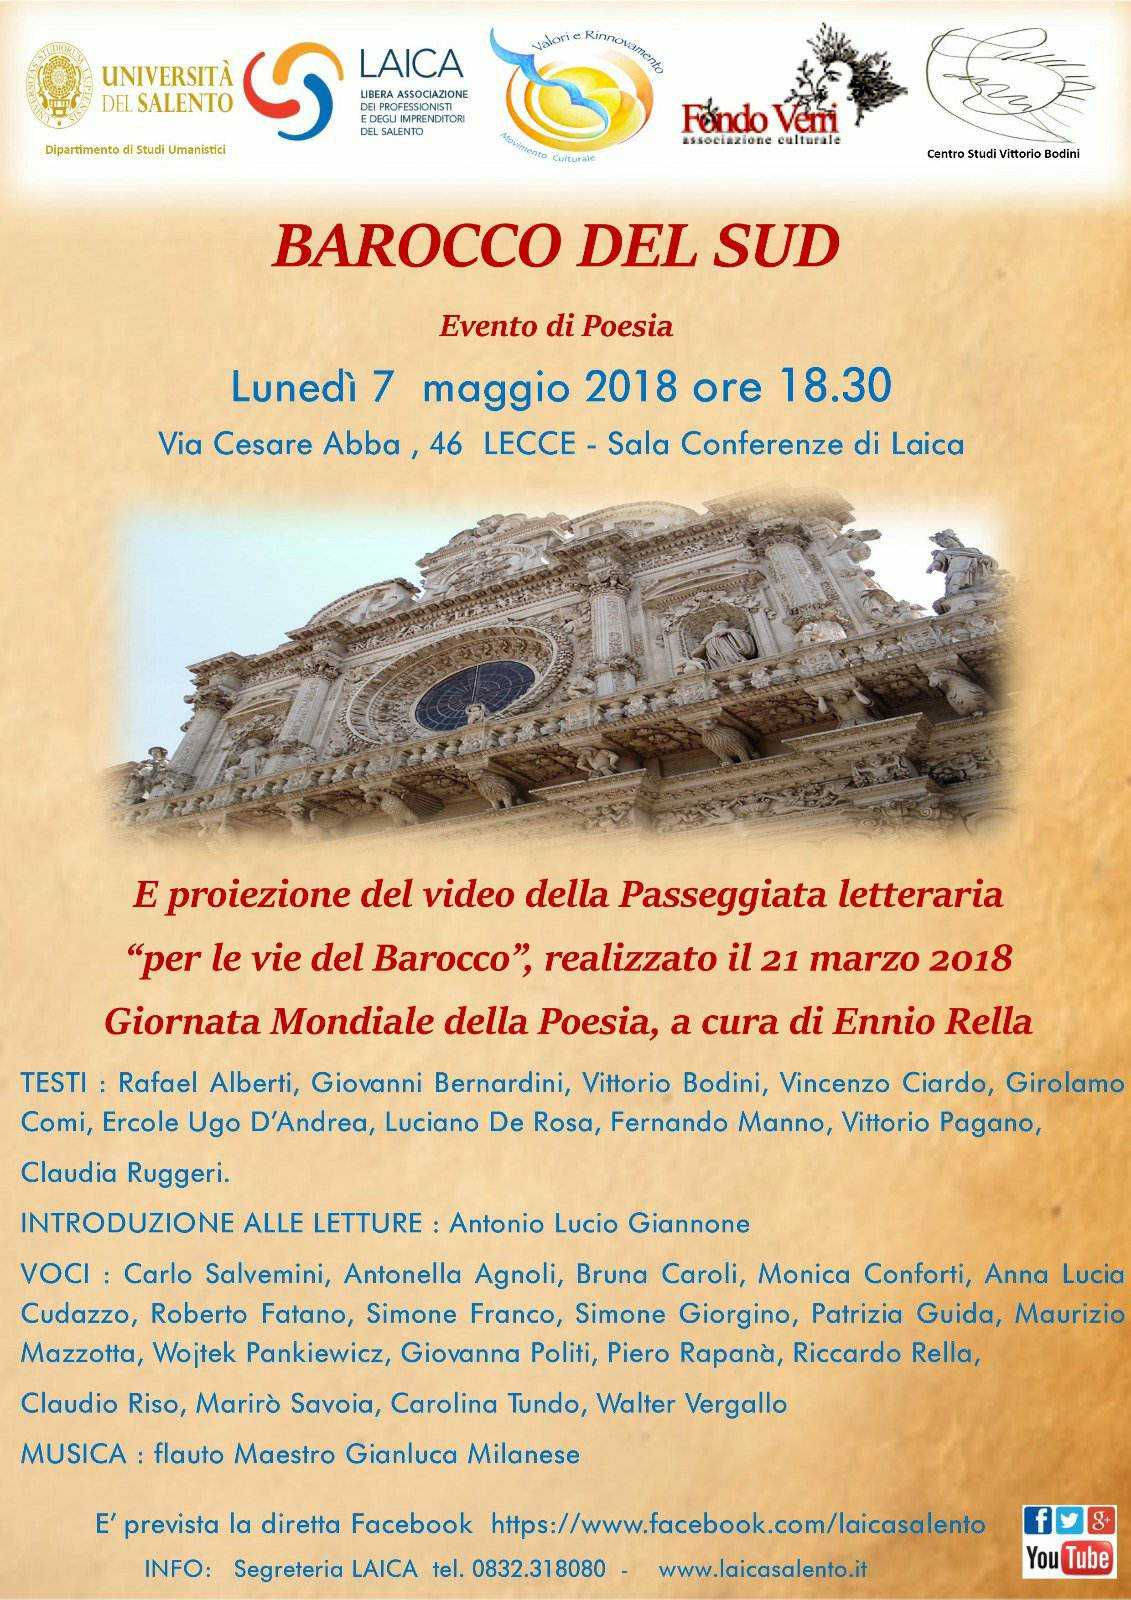 "Barocco del Sud", domani l'evento di poesia da Laica in collaborazione con Unisalento...